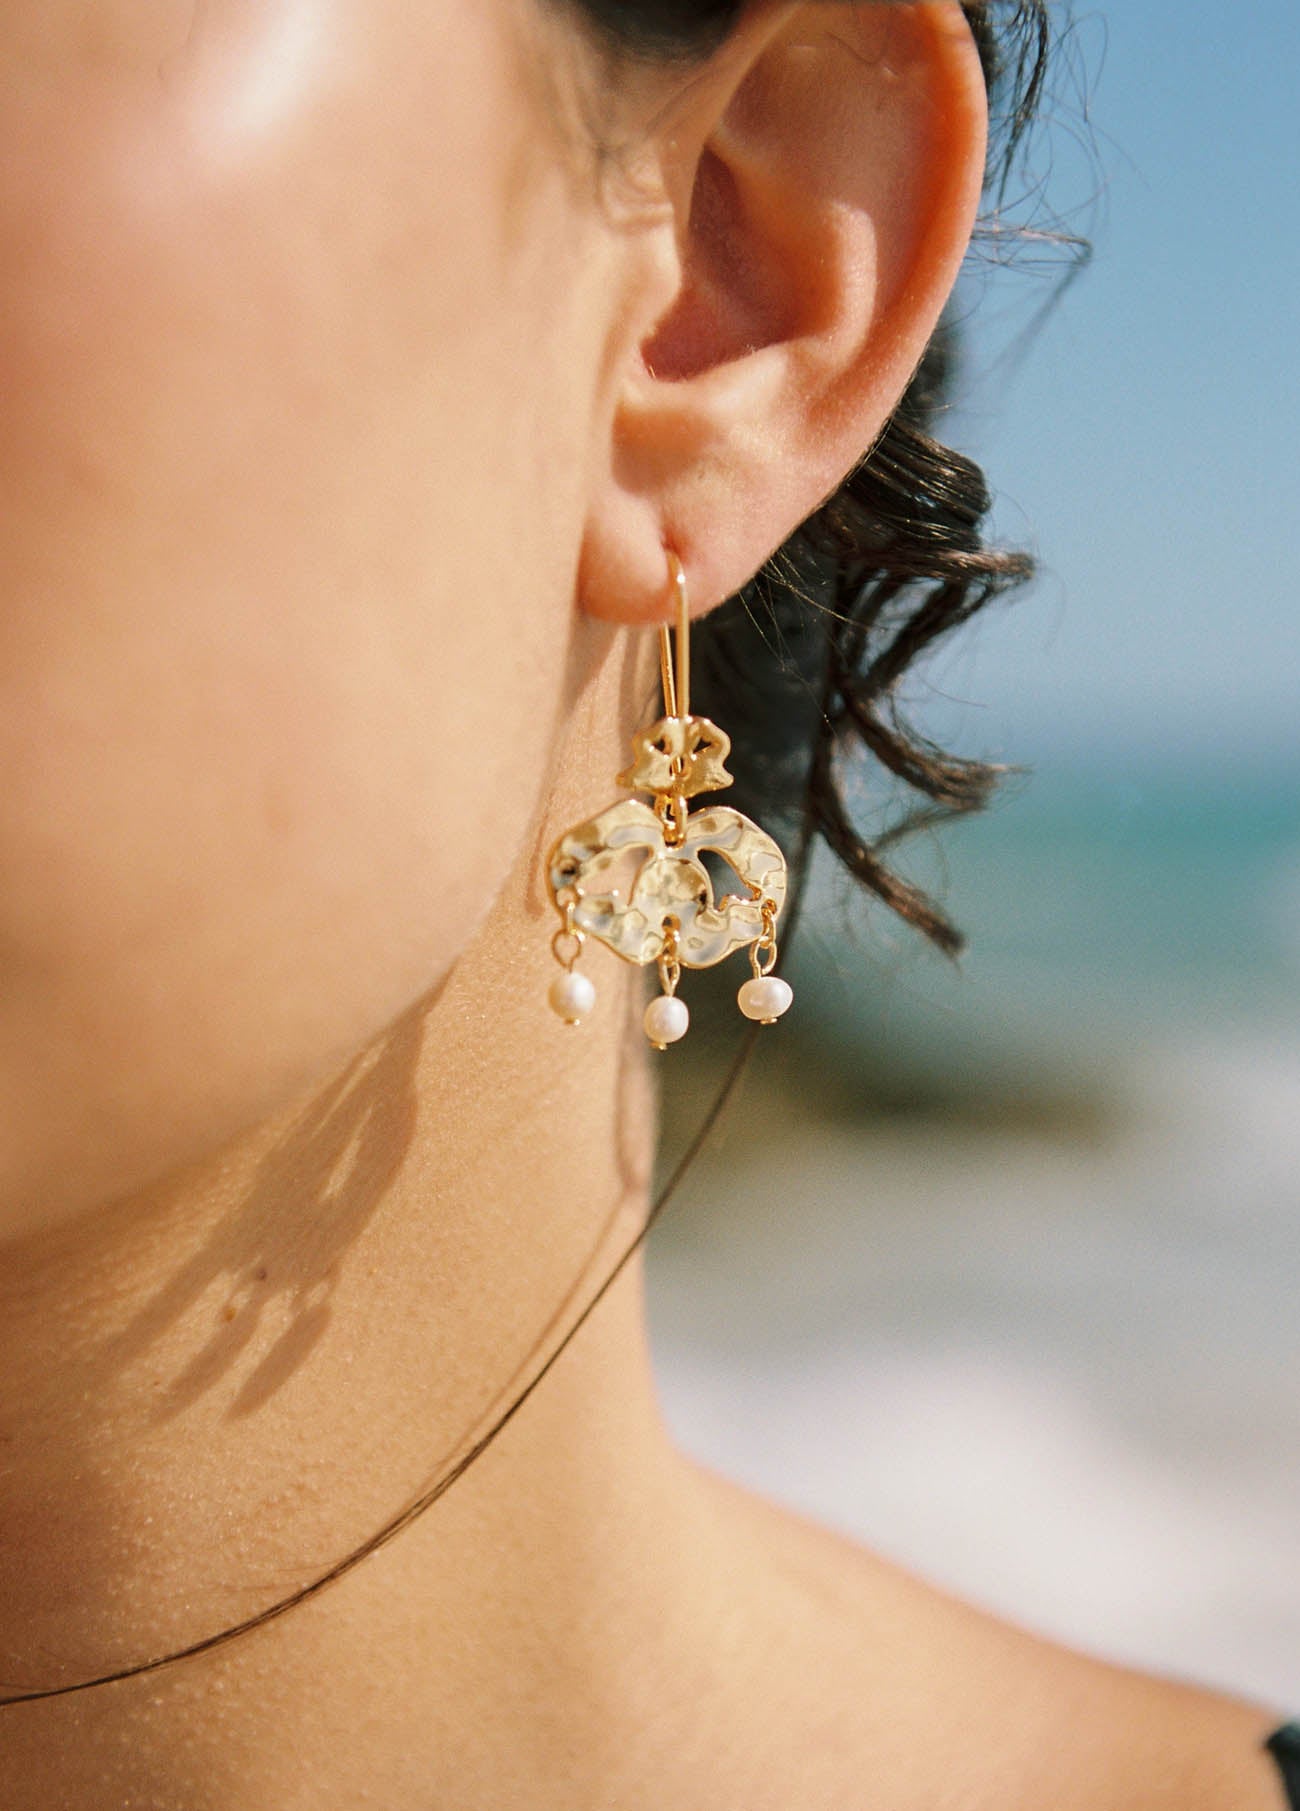 Santa Catalina earrings